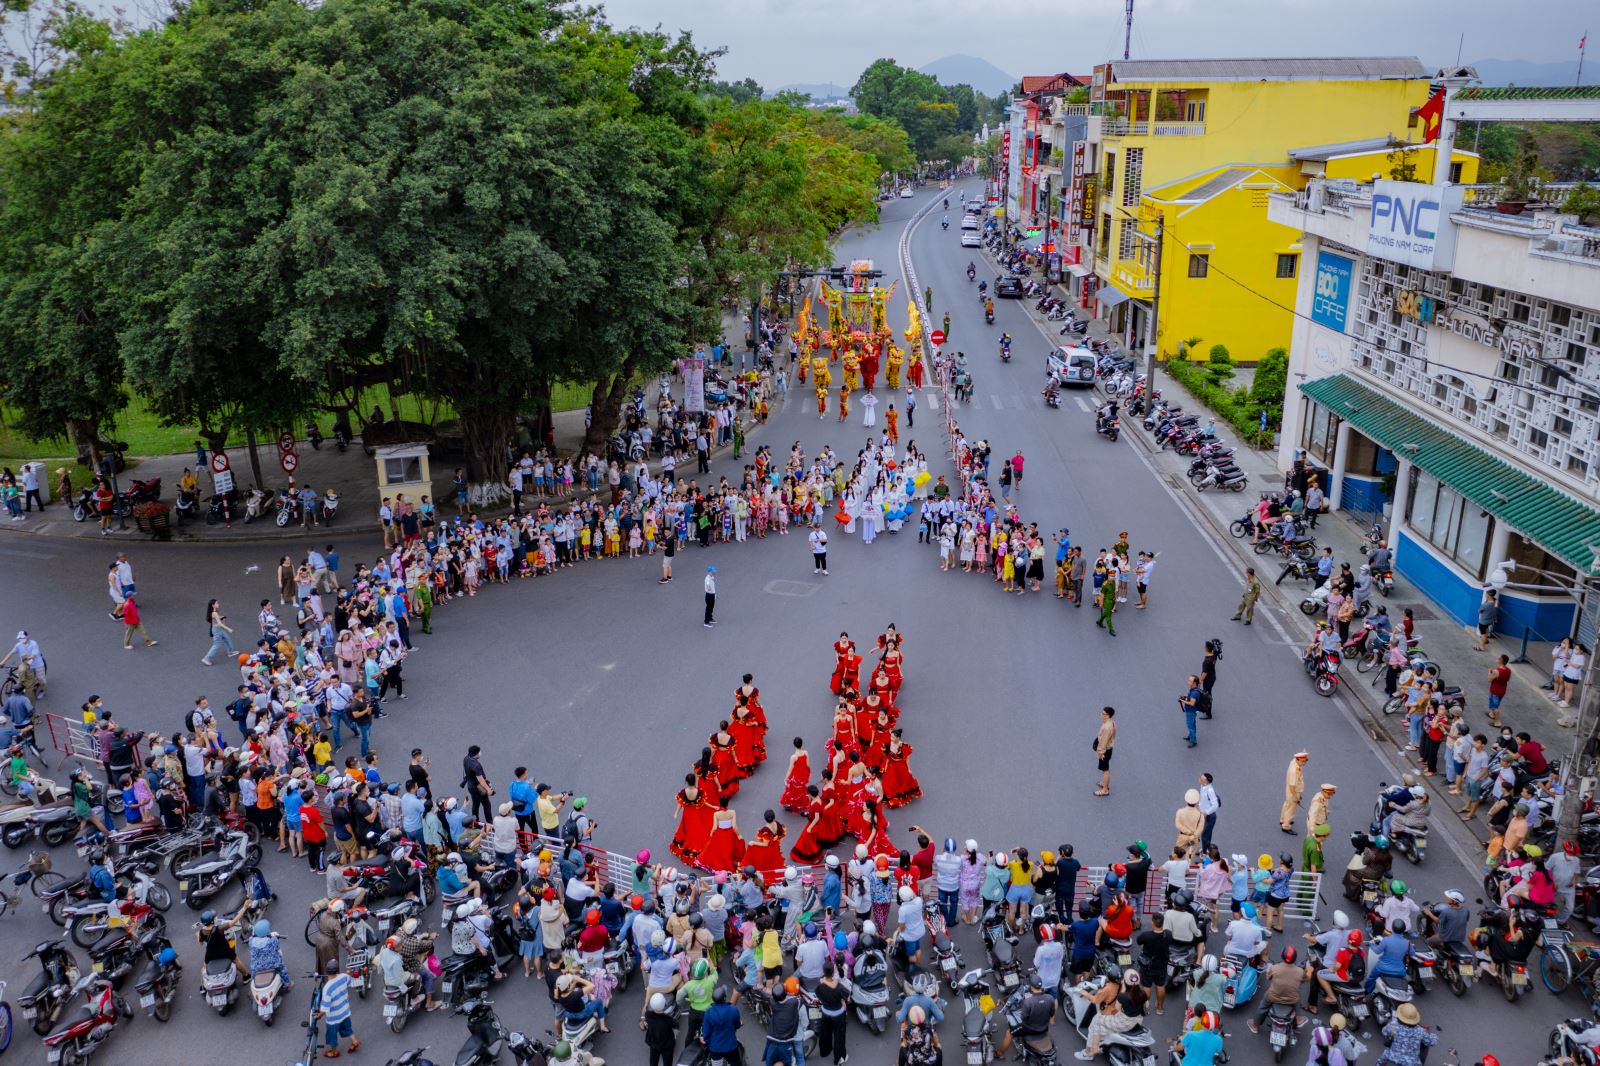 Lễ hội Quảng diễn với sự tham gia của hàng trăm nghệ nhân, nghệ sĩ của các đoàn nghệ thuật biểu diễn qua các tuyến đường chính của thành phố Huế.